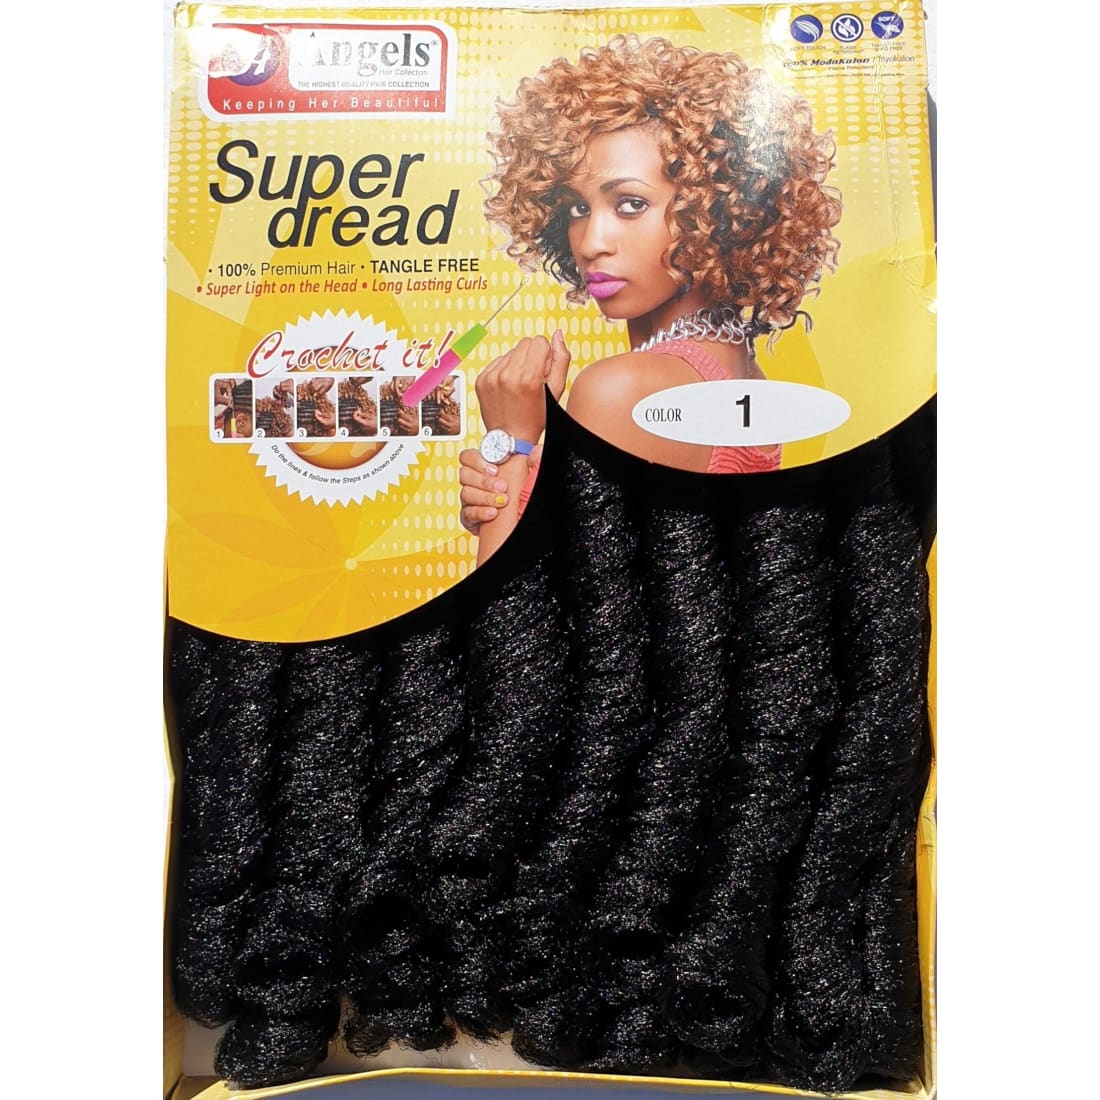 Super Dread Colour No 1 - Crochet